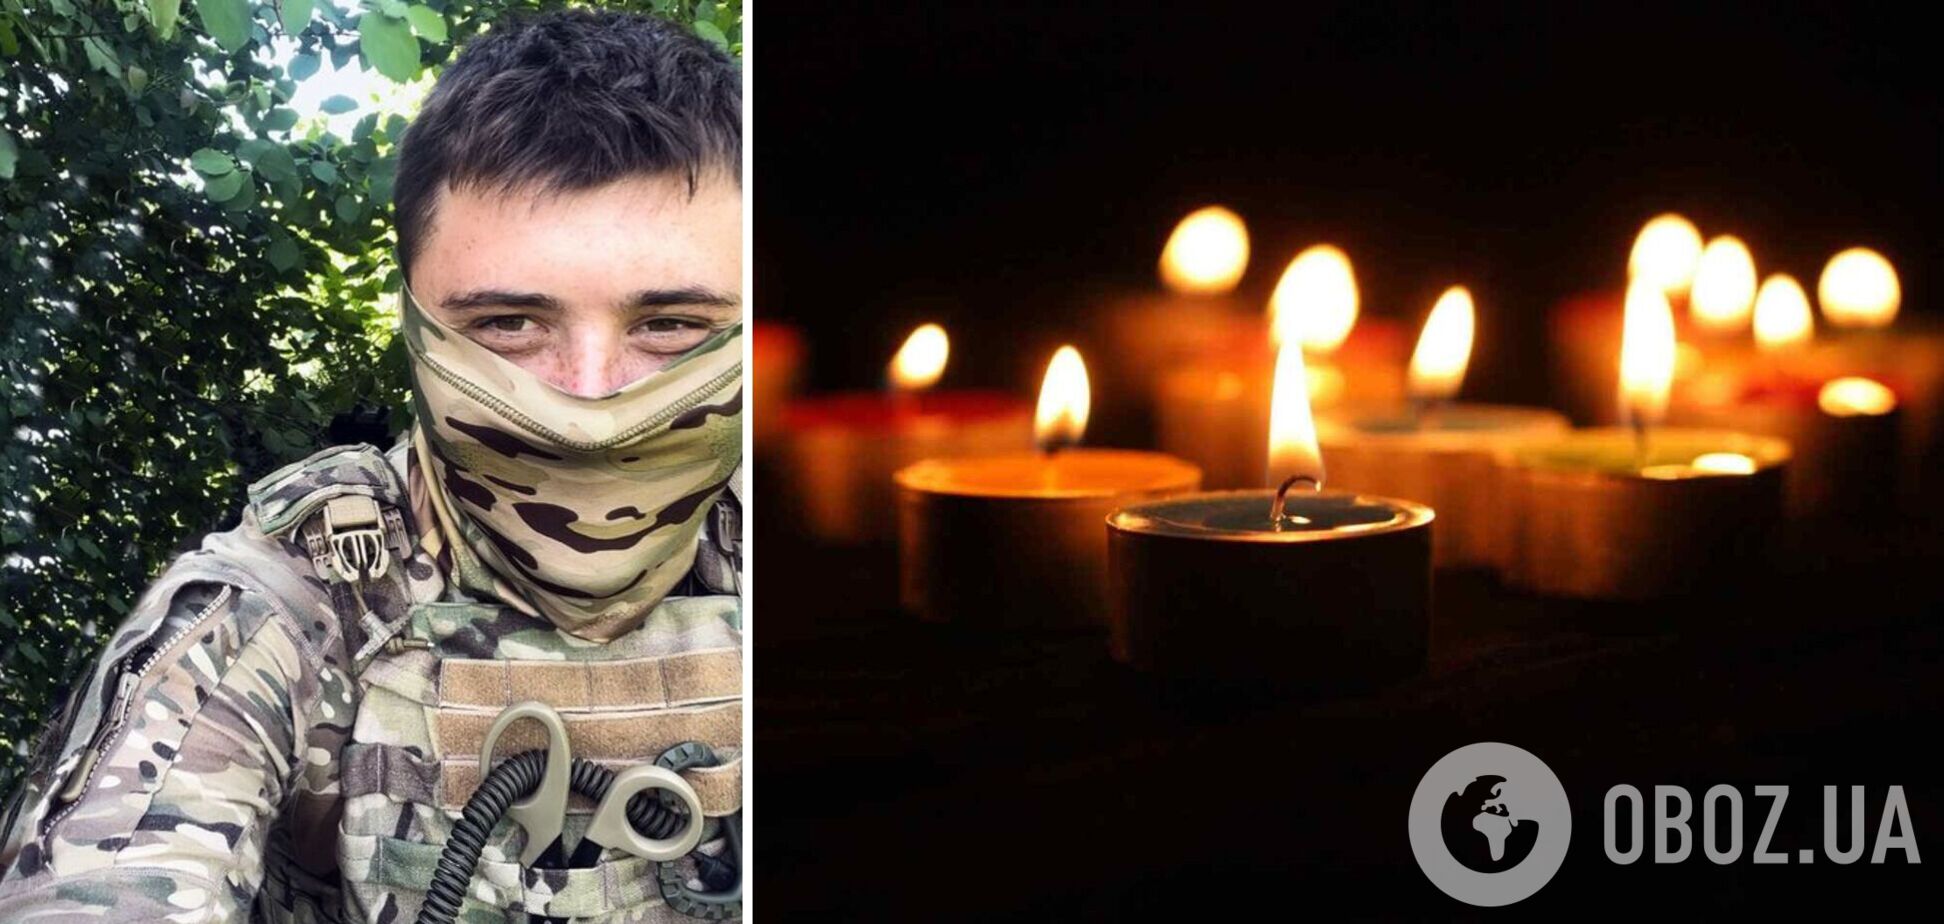 Був одним із найкращих: у боях за Україну загинув воїн із бригади 'Буревій' з позивним 'Торнадо'
